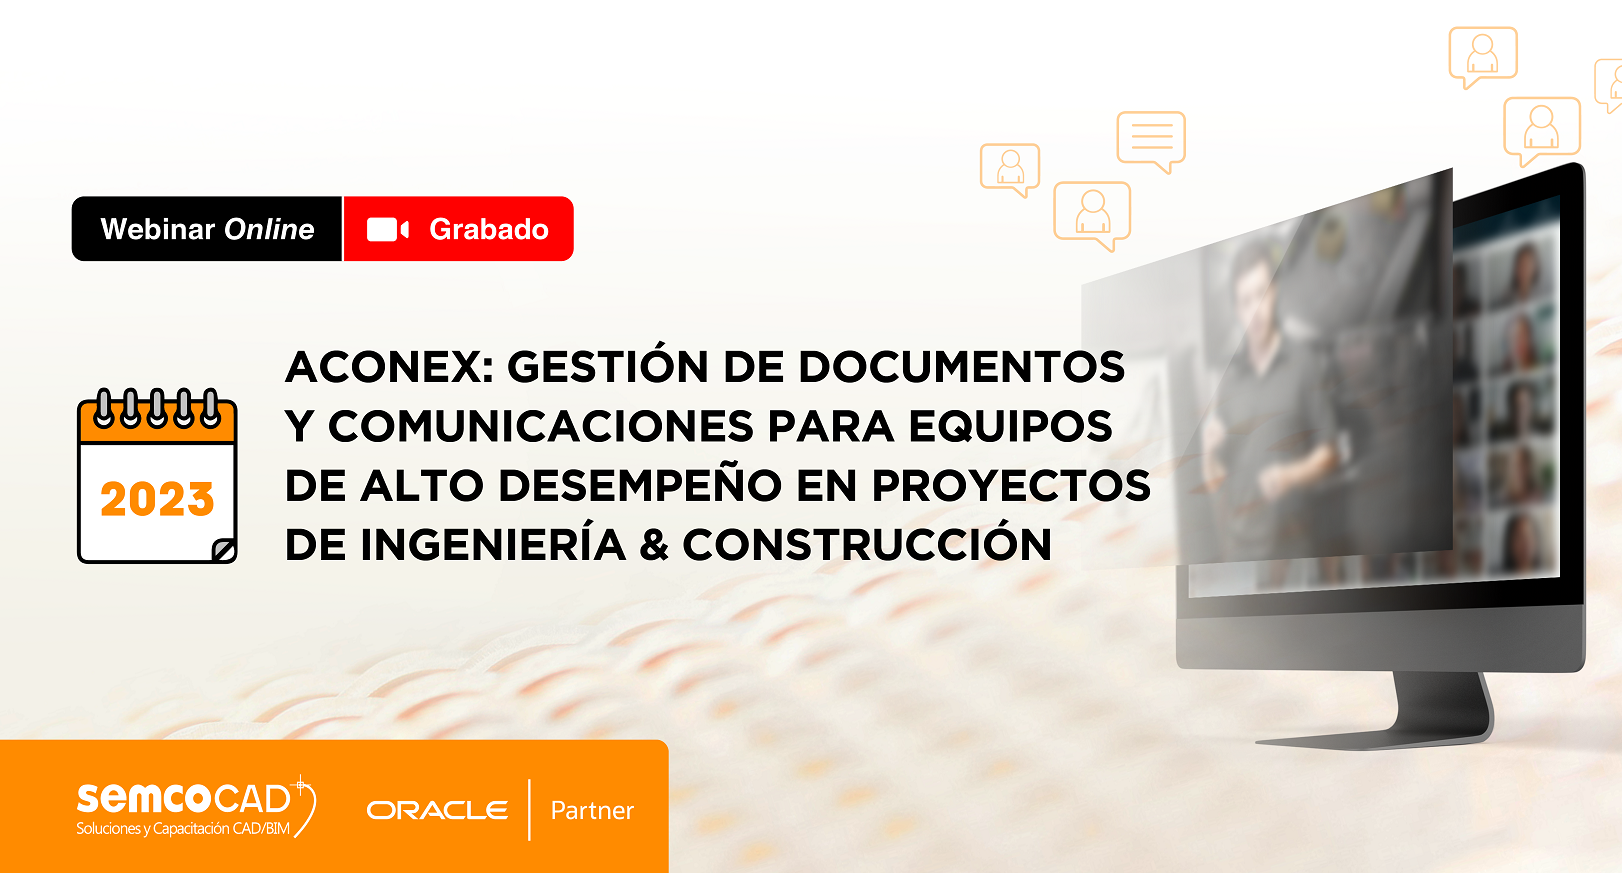 Aconex: Gestión de Documentos y Comunicaciones para Equipos de Alto Desempeño en Proyectos de Ingeniería y Construcción